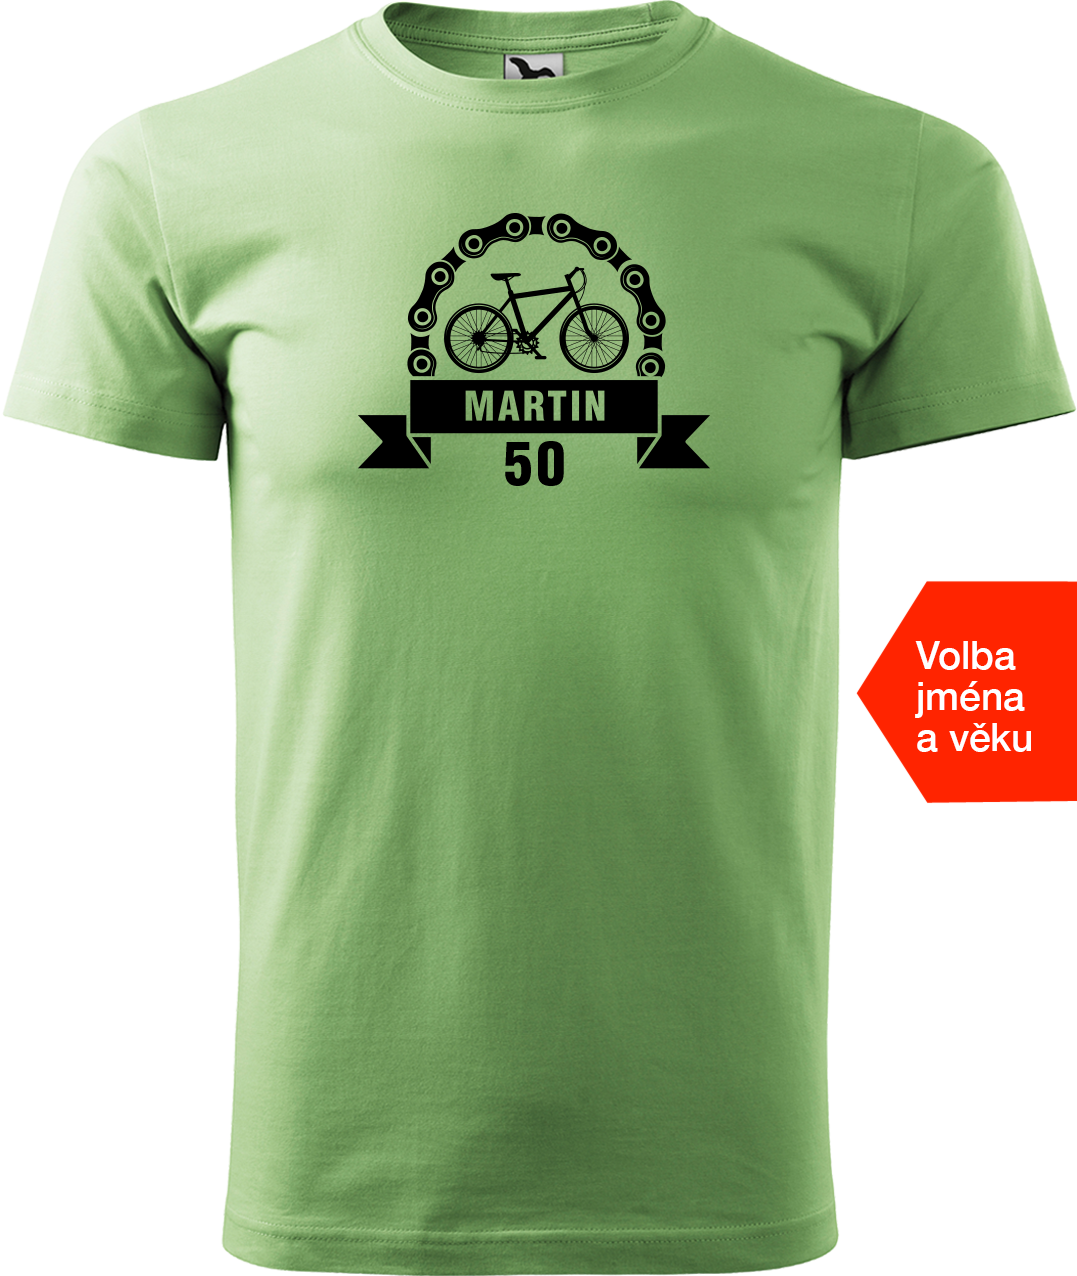 Pánské tričko pro cyklistu se jménem a věkem - Blahopřání Velikost: XL, Barva: Trávově zelená (39)